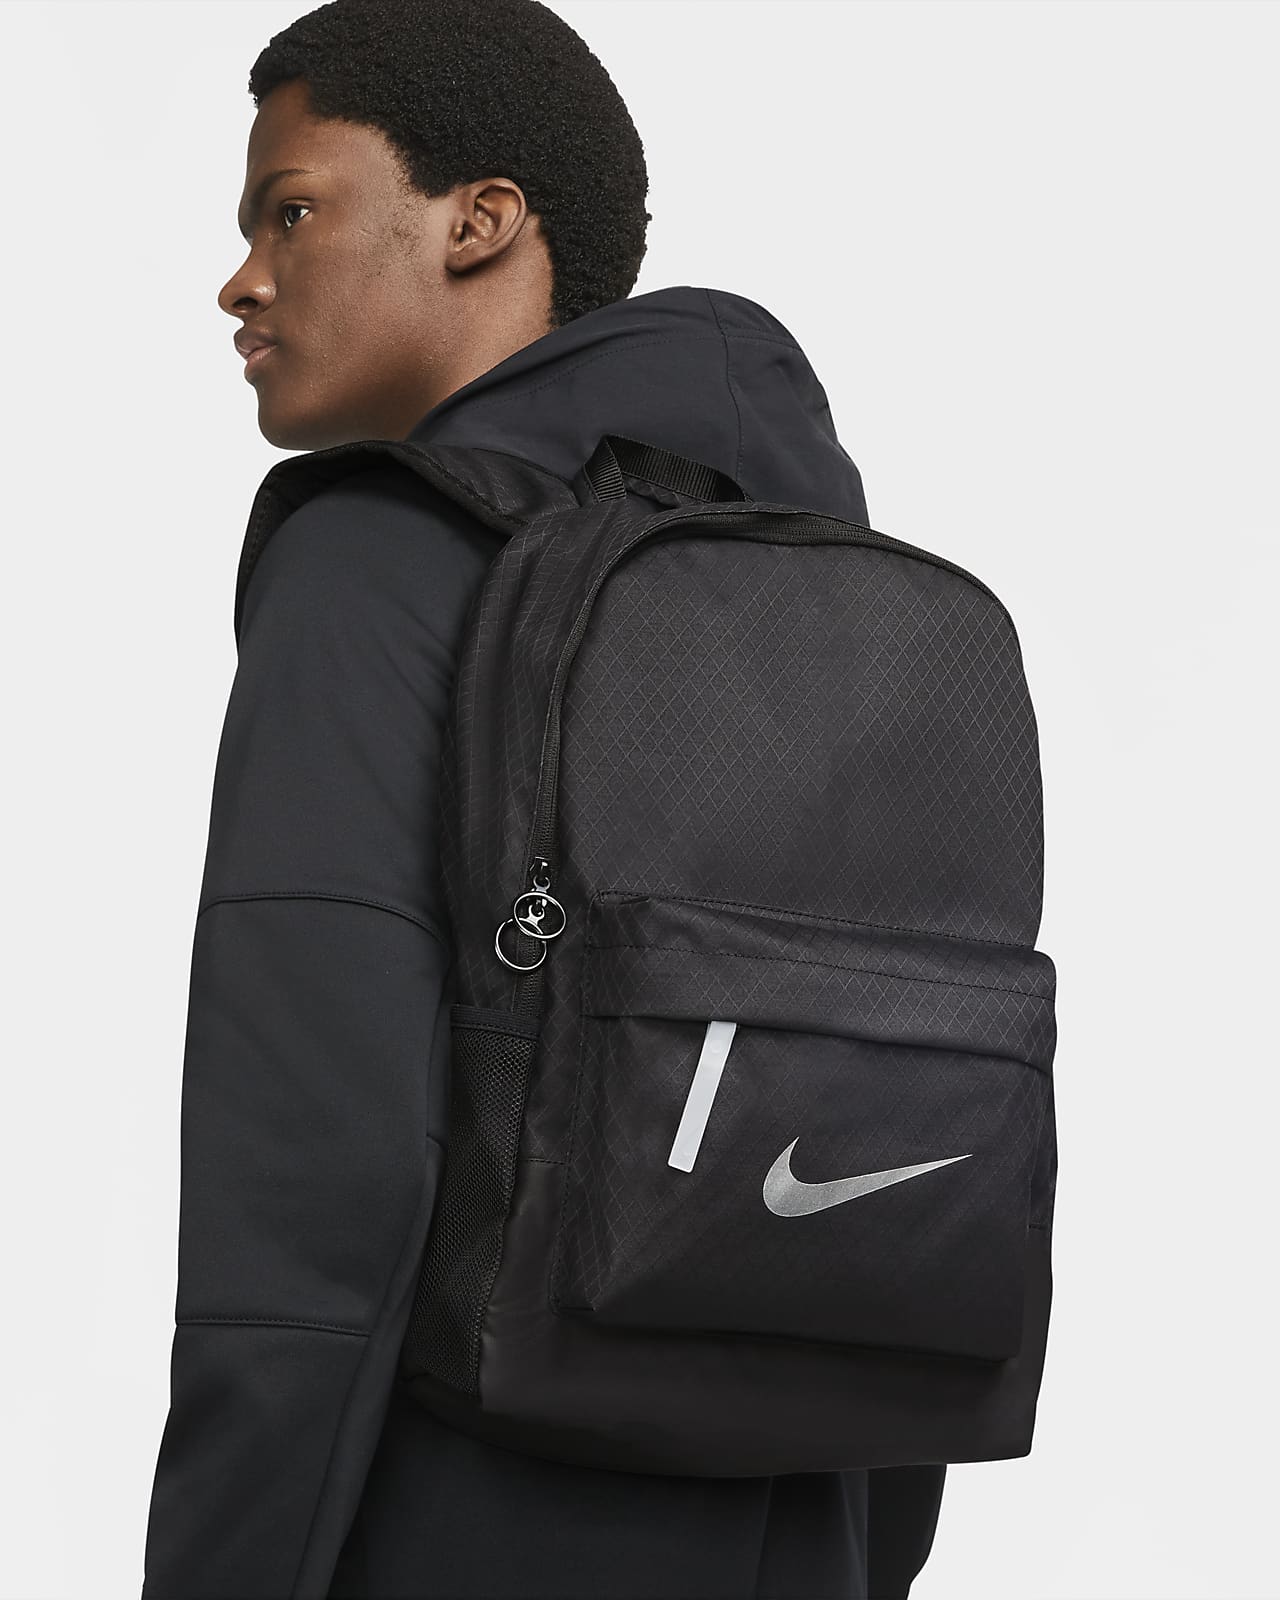 Bemyndigelse Skulle Afskrække Nike Sportswear Heritage-rygsæk til vinteren (25 L). Nike DK